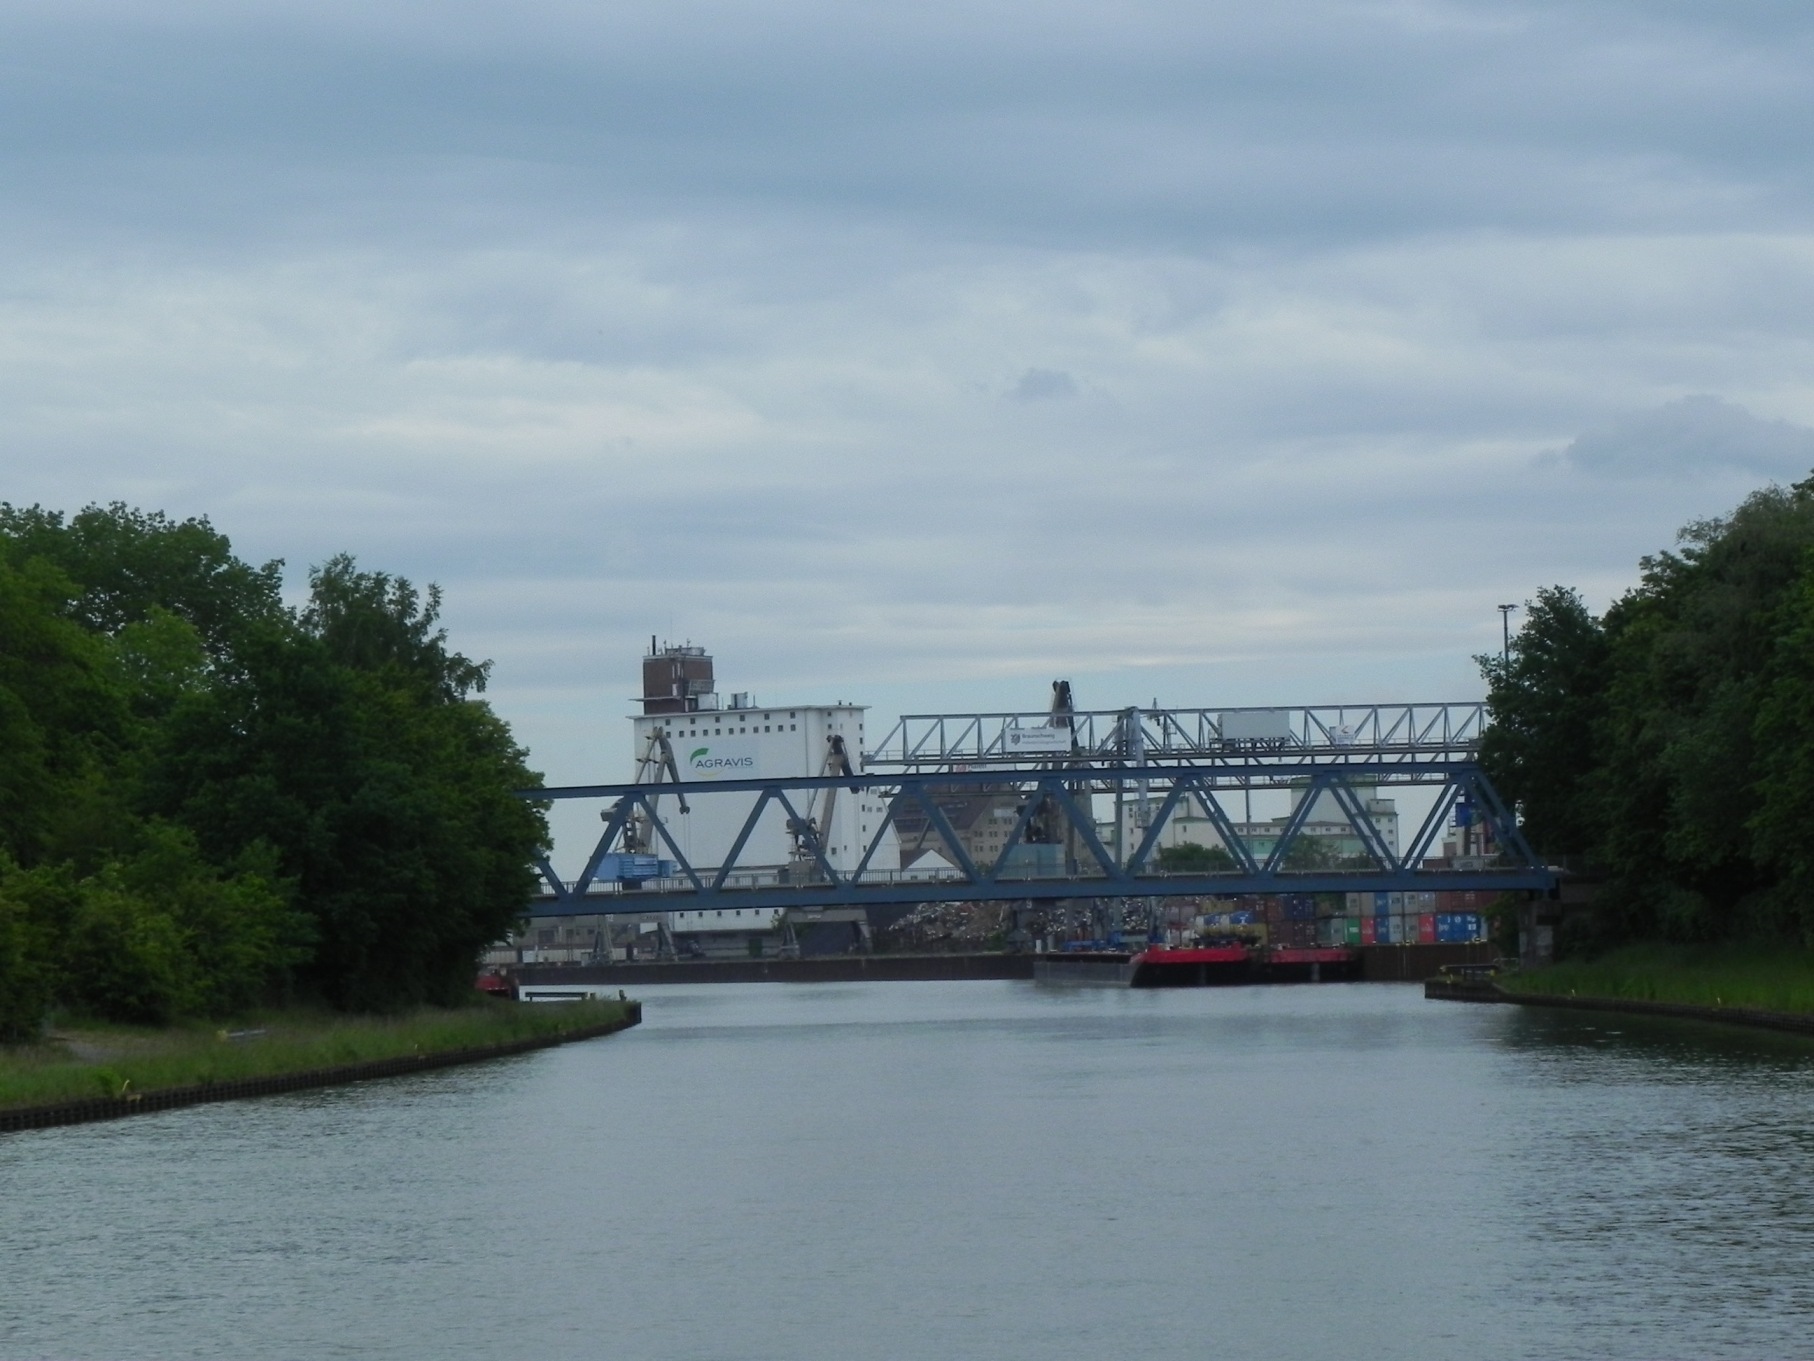 20150601013 Braunschweig Container Schrott Oel und Argarhafen Kopie